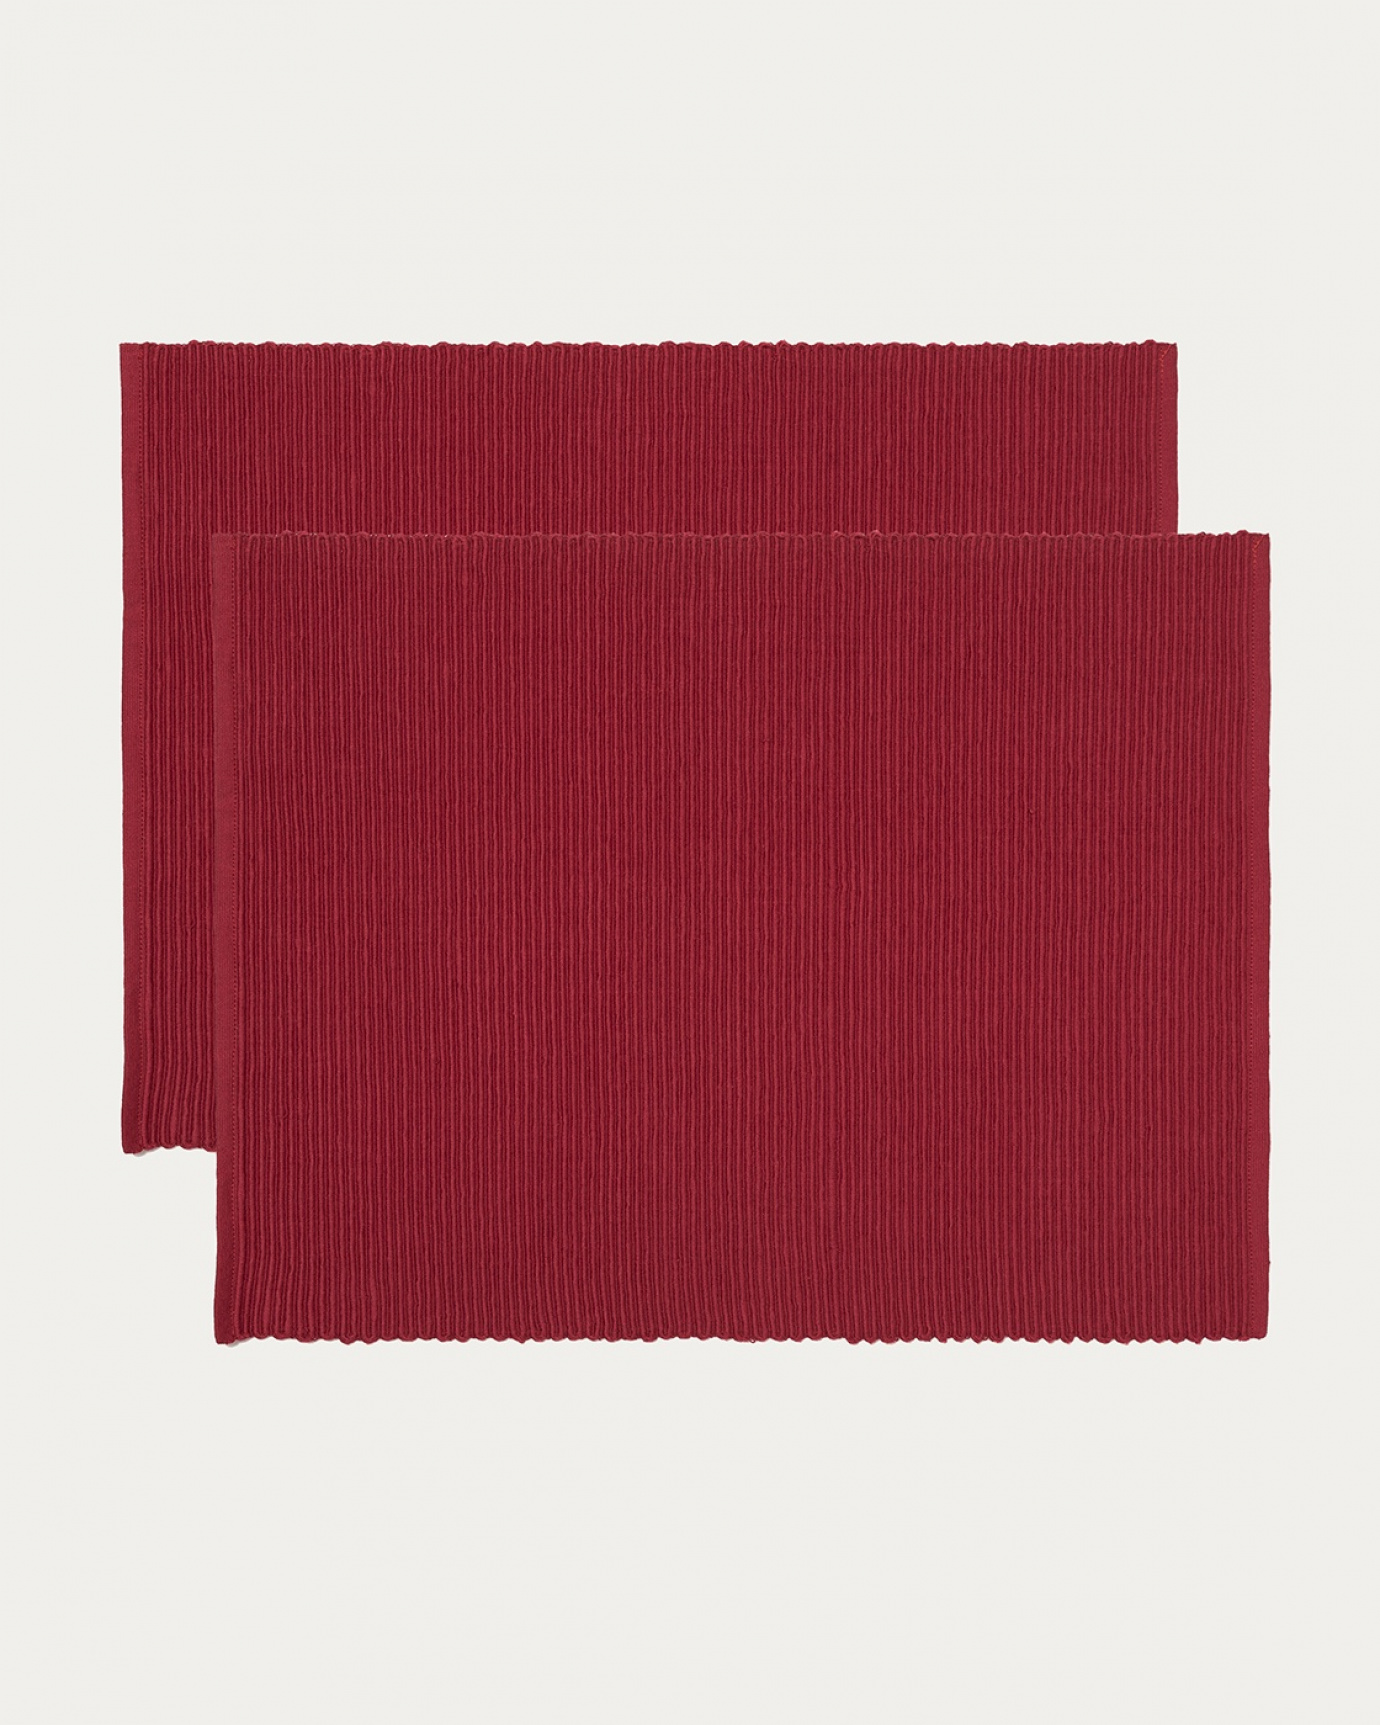 Produktbild rot UNI Tischset aus weicher Baumwolle in Rippenqualität von LINUM DESIGN. Größe 35x46 cm und in 2er-Pack verkauft.